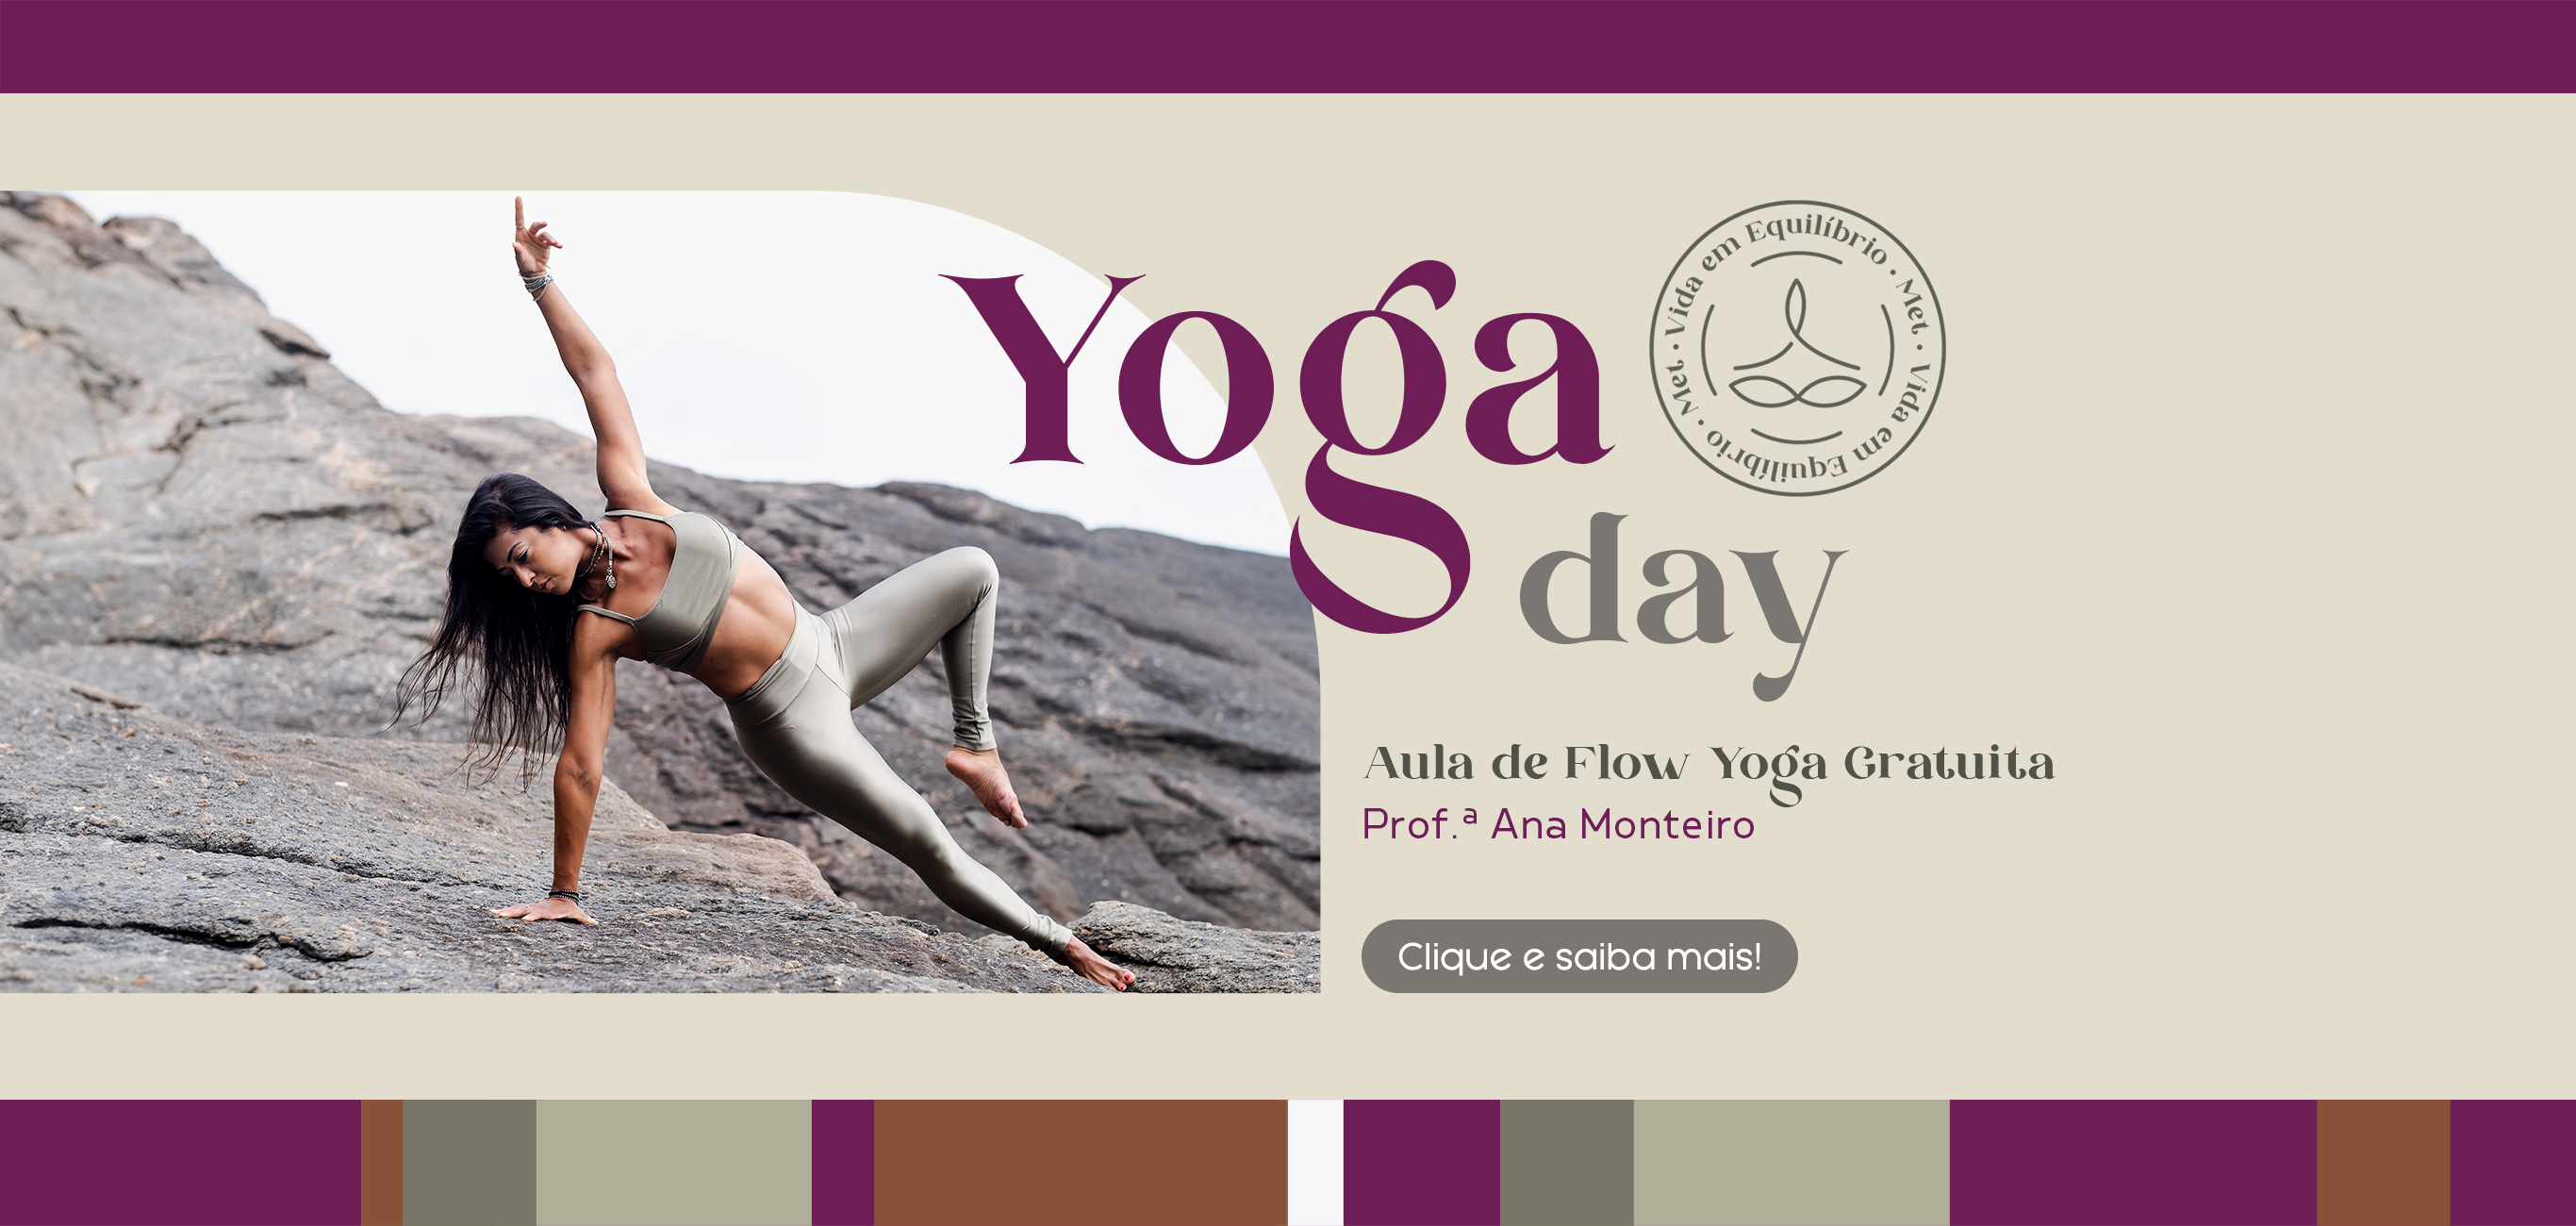 Yoga Day! Aula de Flow Yoga gratuita com a professora Ana Monteiro. Clique e saiba mais! - Shopping Metropolitano Barra